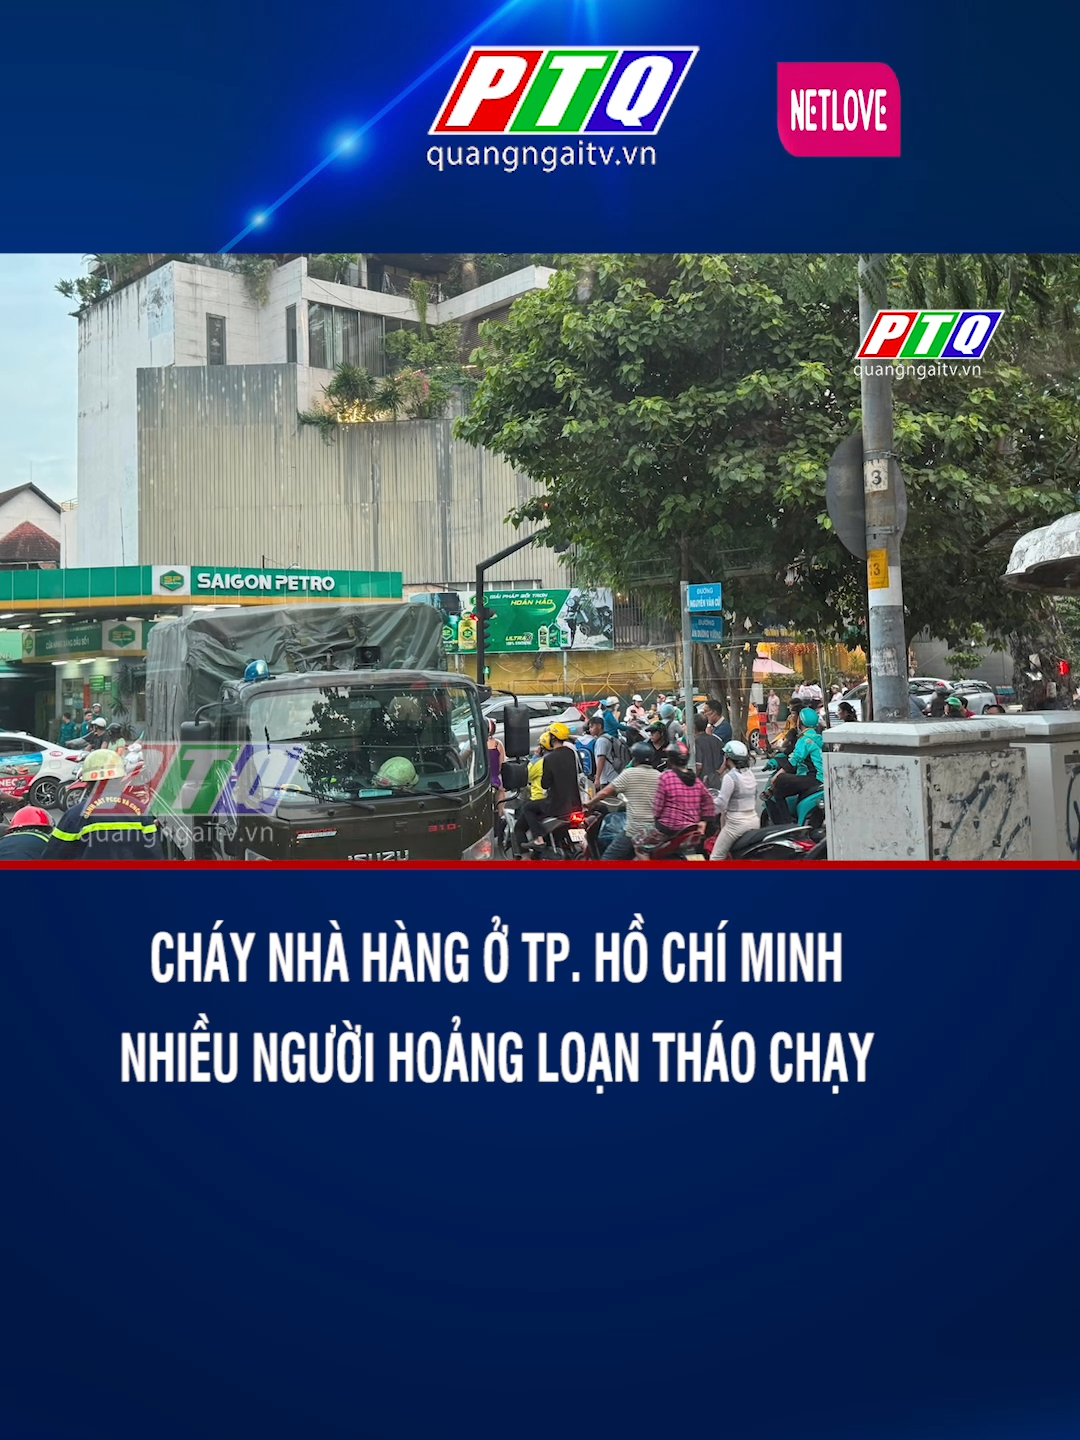 Cháy nhà hàng ở TP. Hồ Chí Minh, nhiều người hoảng loạn tháo chạy #truyenhinhquangngai #quangngai #ptq #chay #tiktok #76quangngai